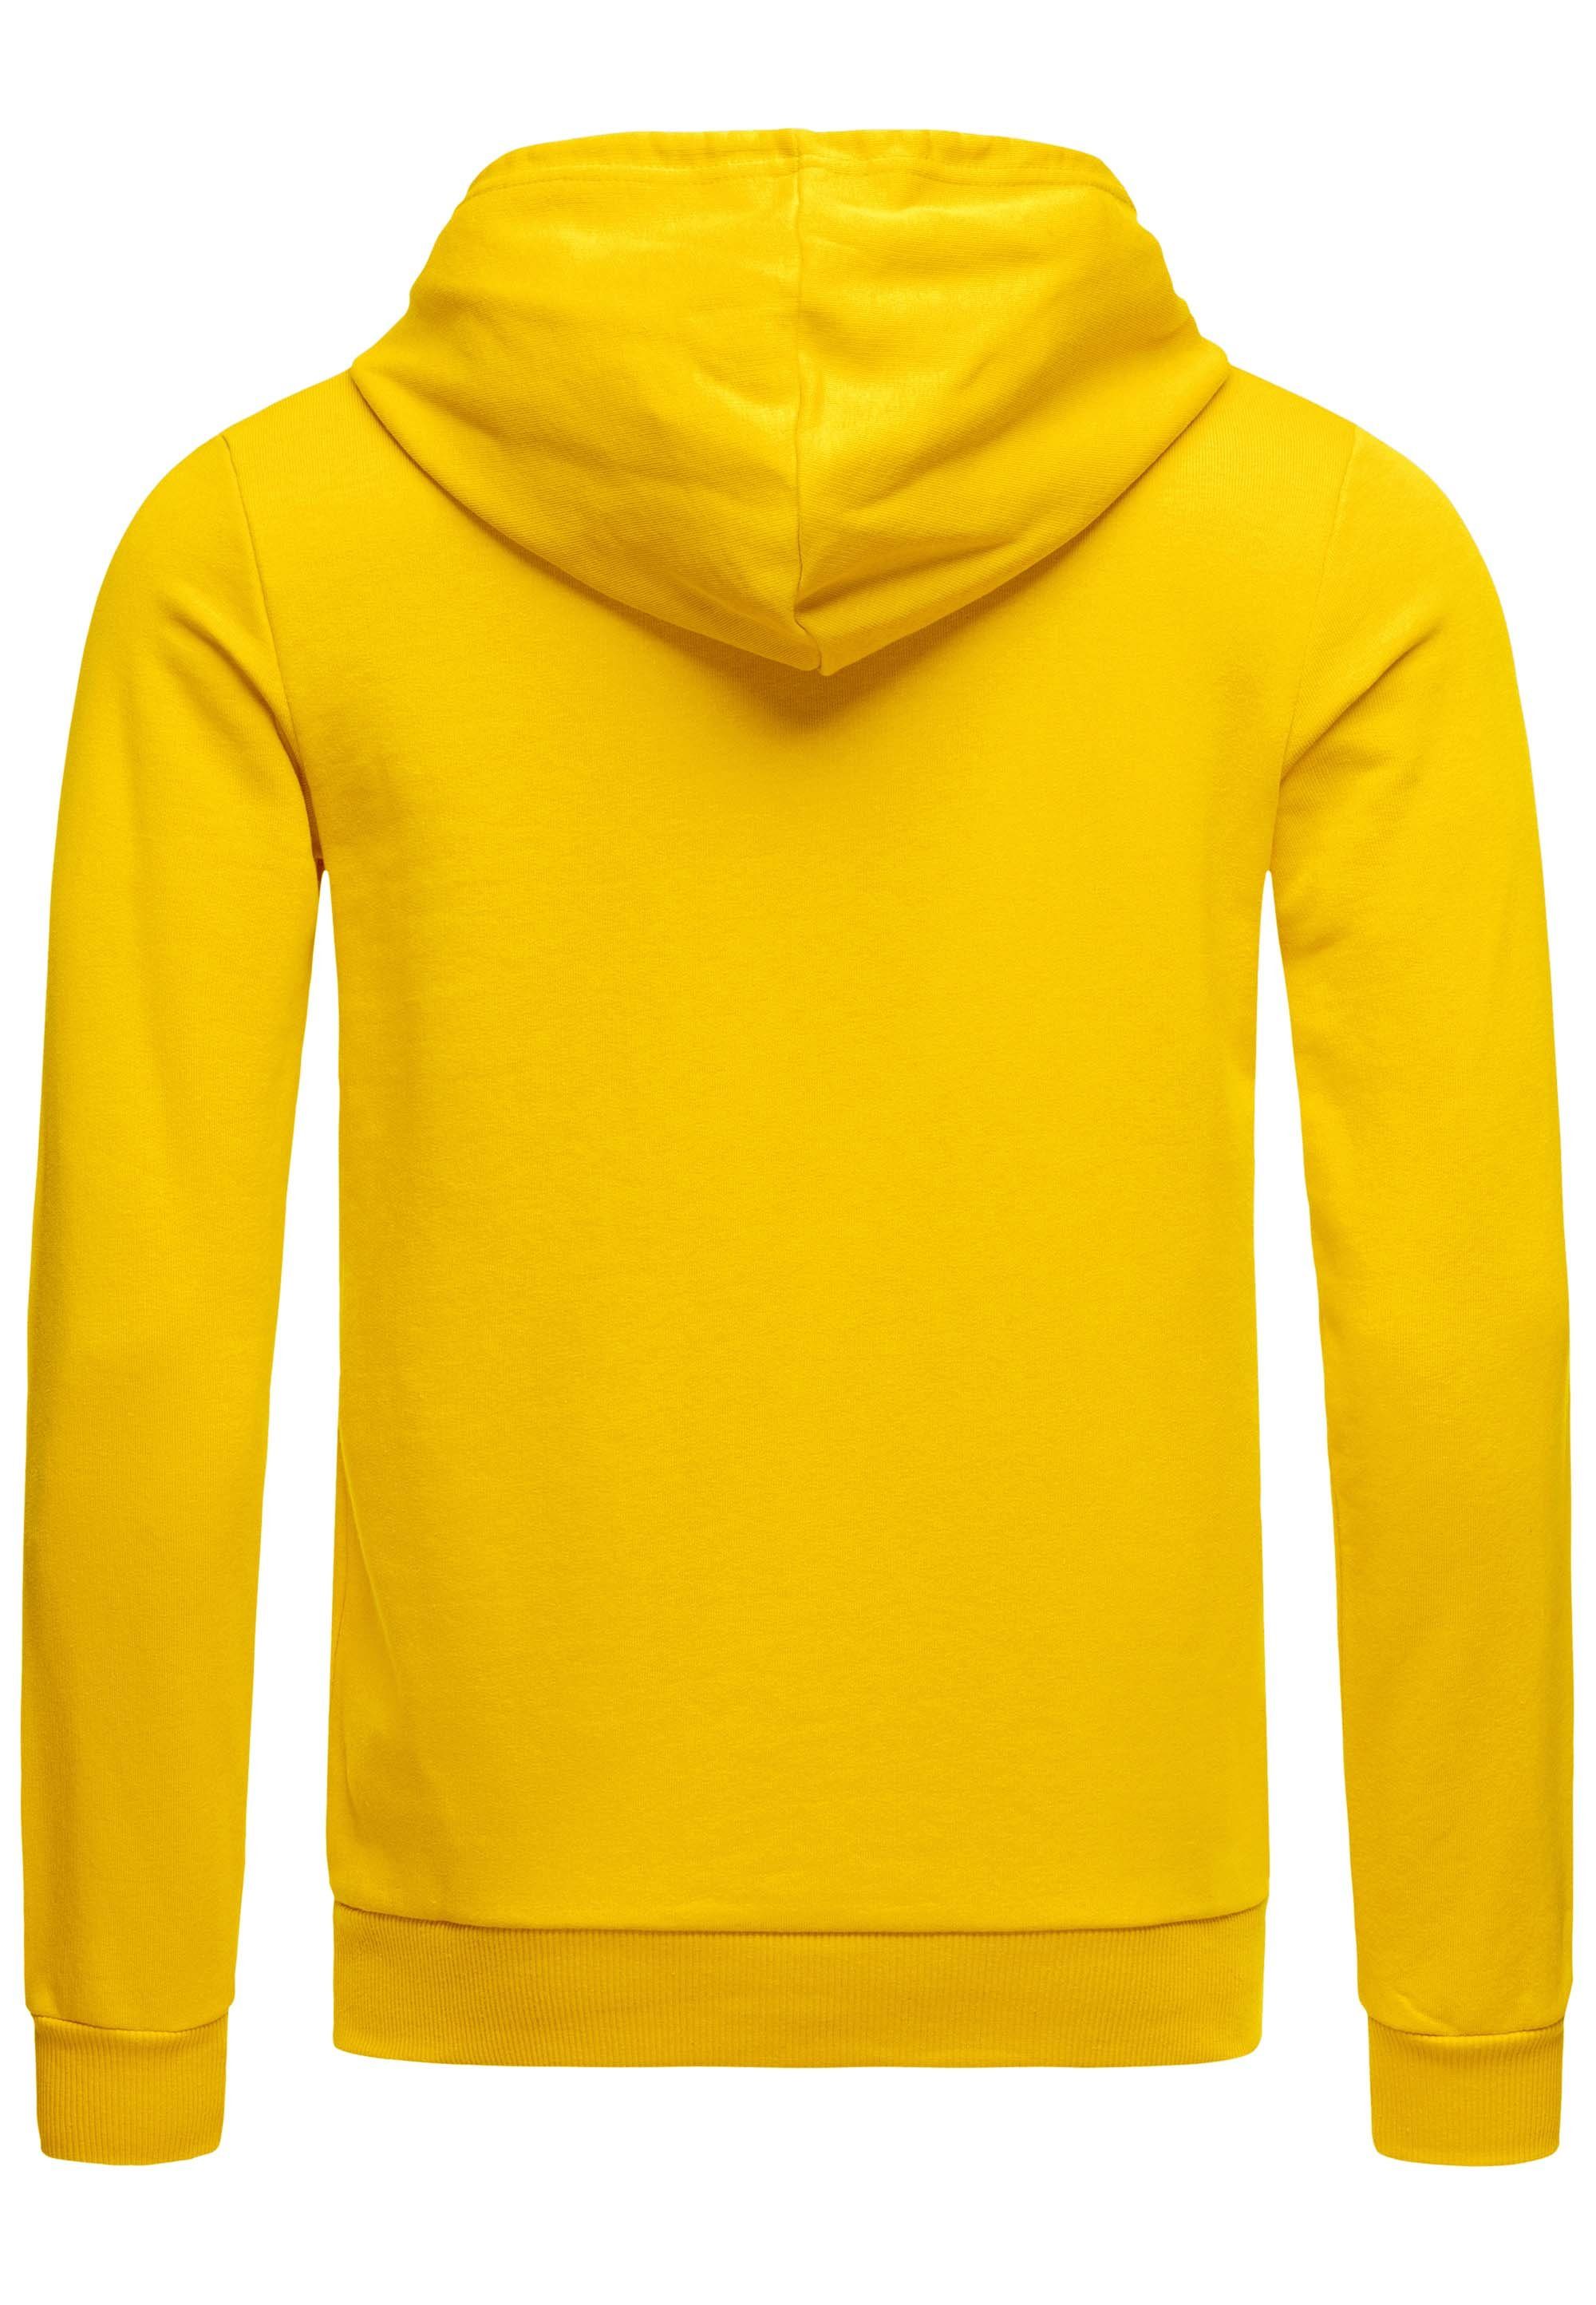 RedBridge Kapuzensweatshirt Hoodie mit Kängurutasche Qualität Premium Gelb